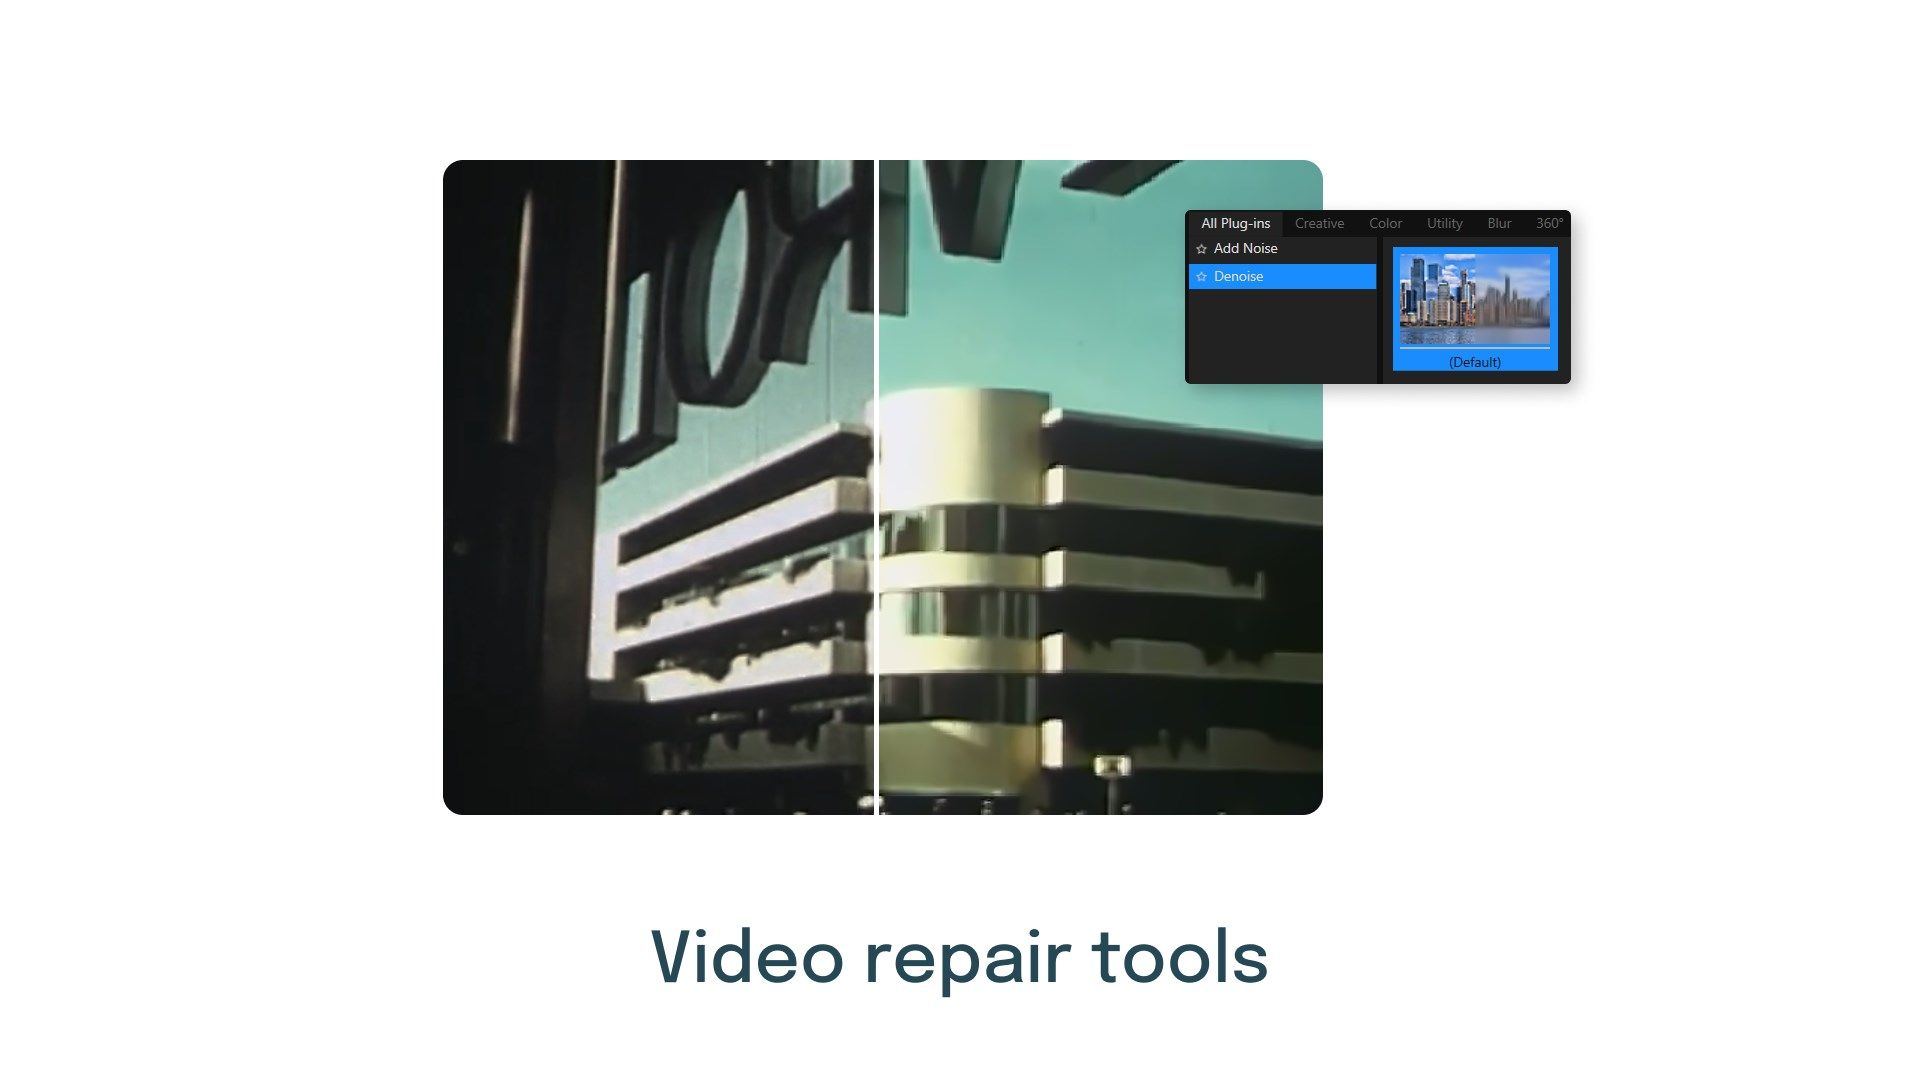 Video repair tools